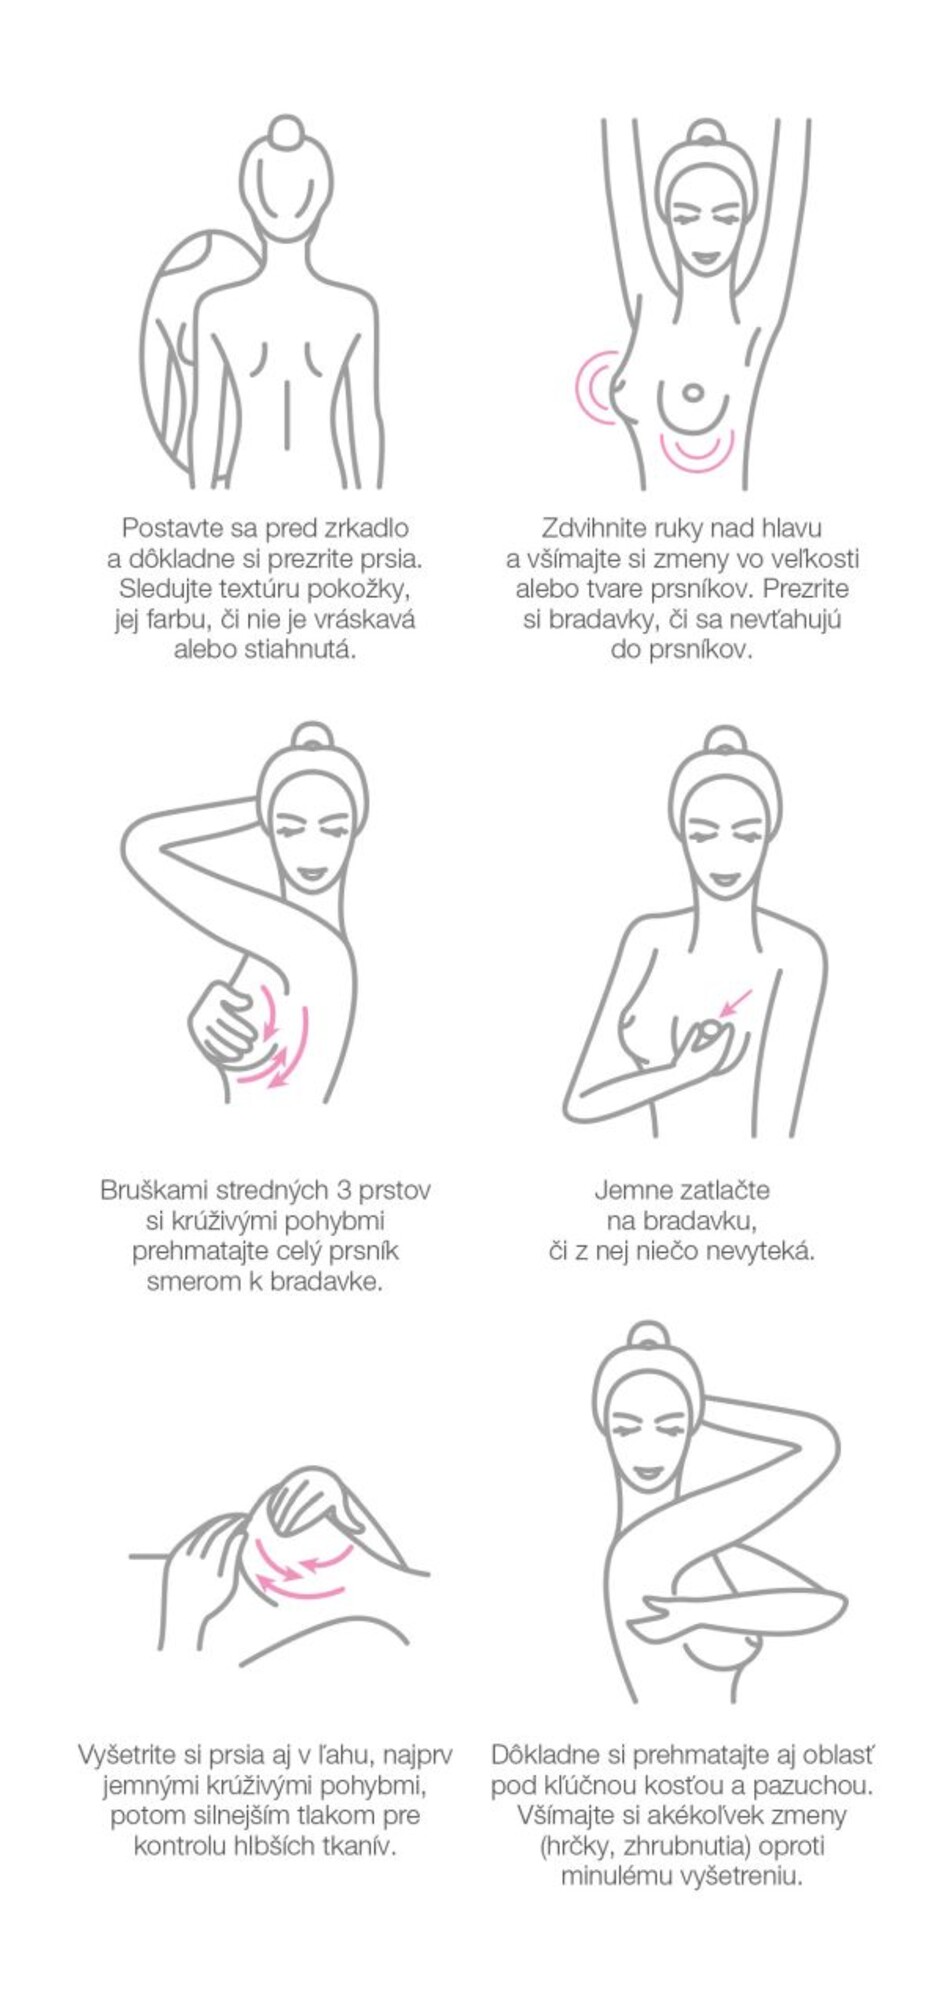 Ako si urobiť samovyšetrenie prsníkov.